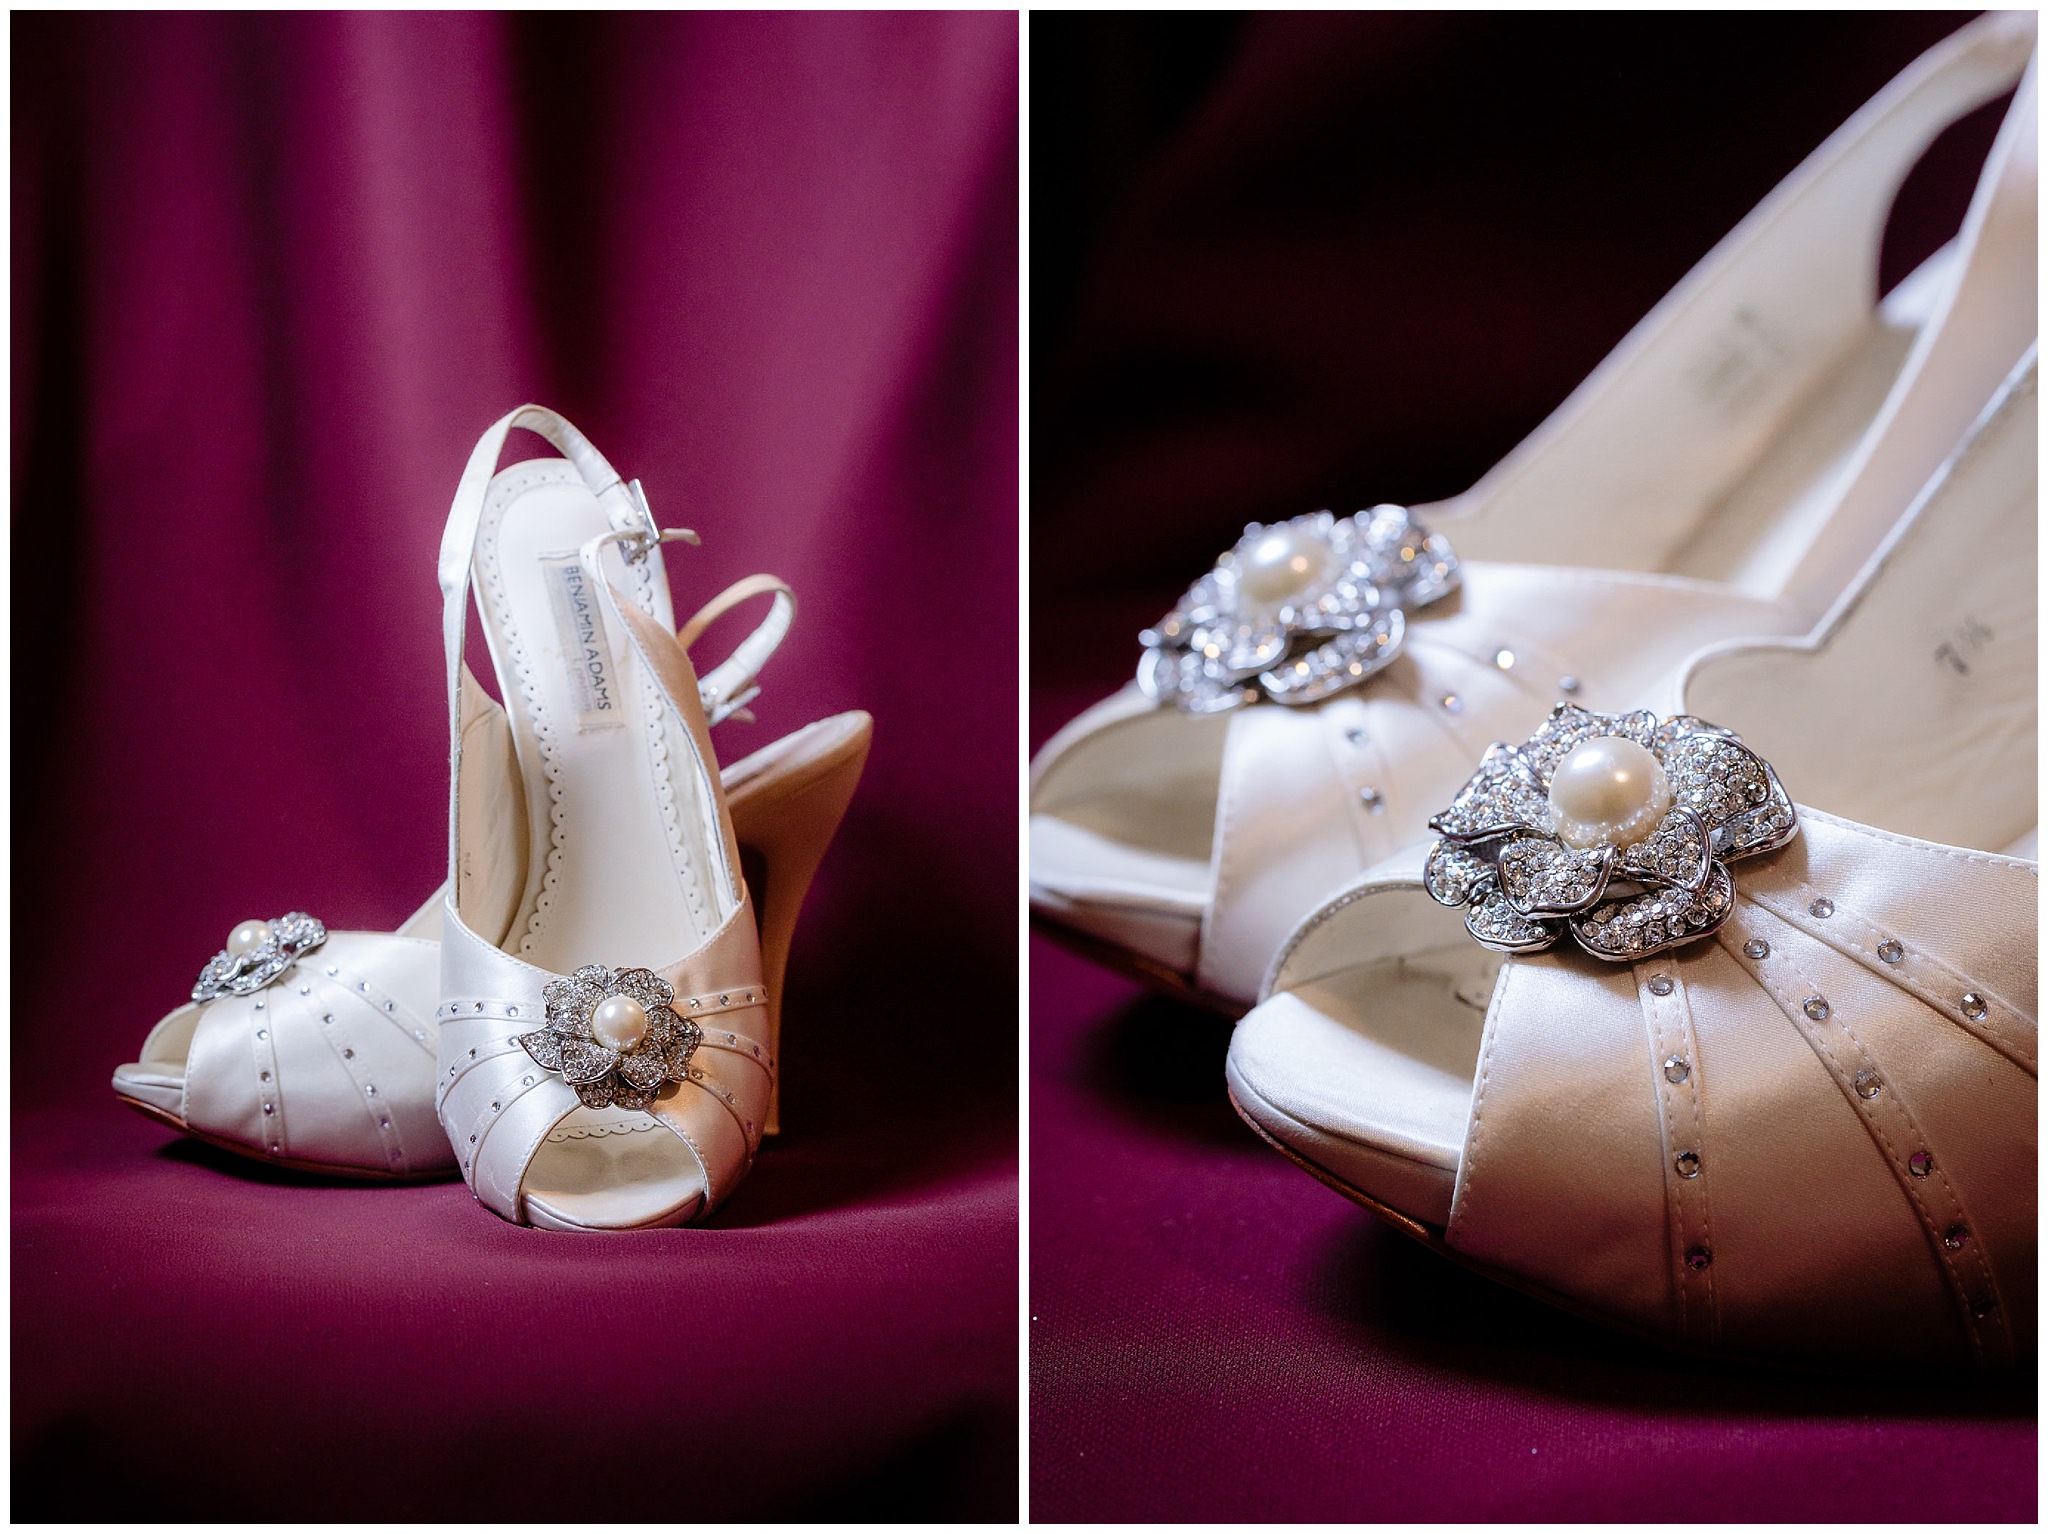 Bride's shoes rest on a burgundy bridesmaids dress